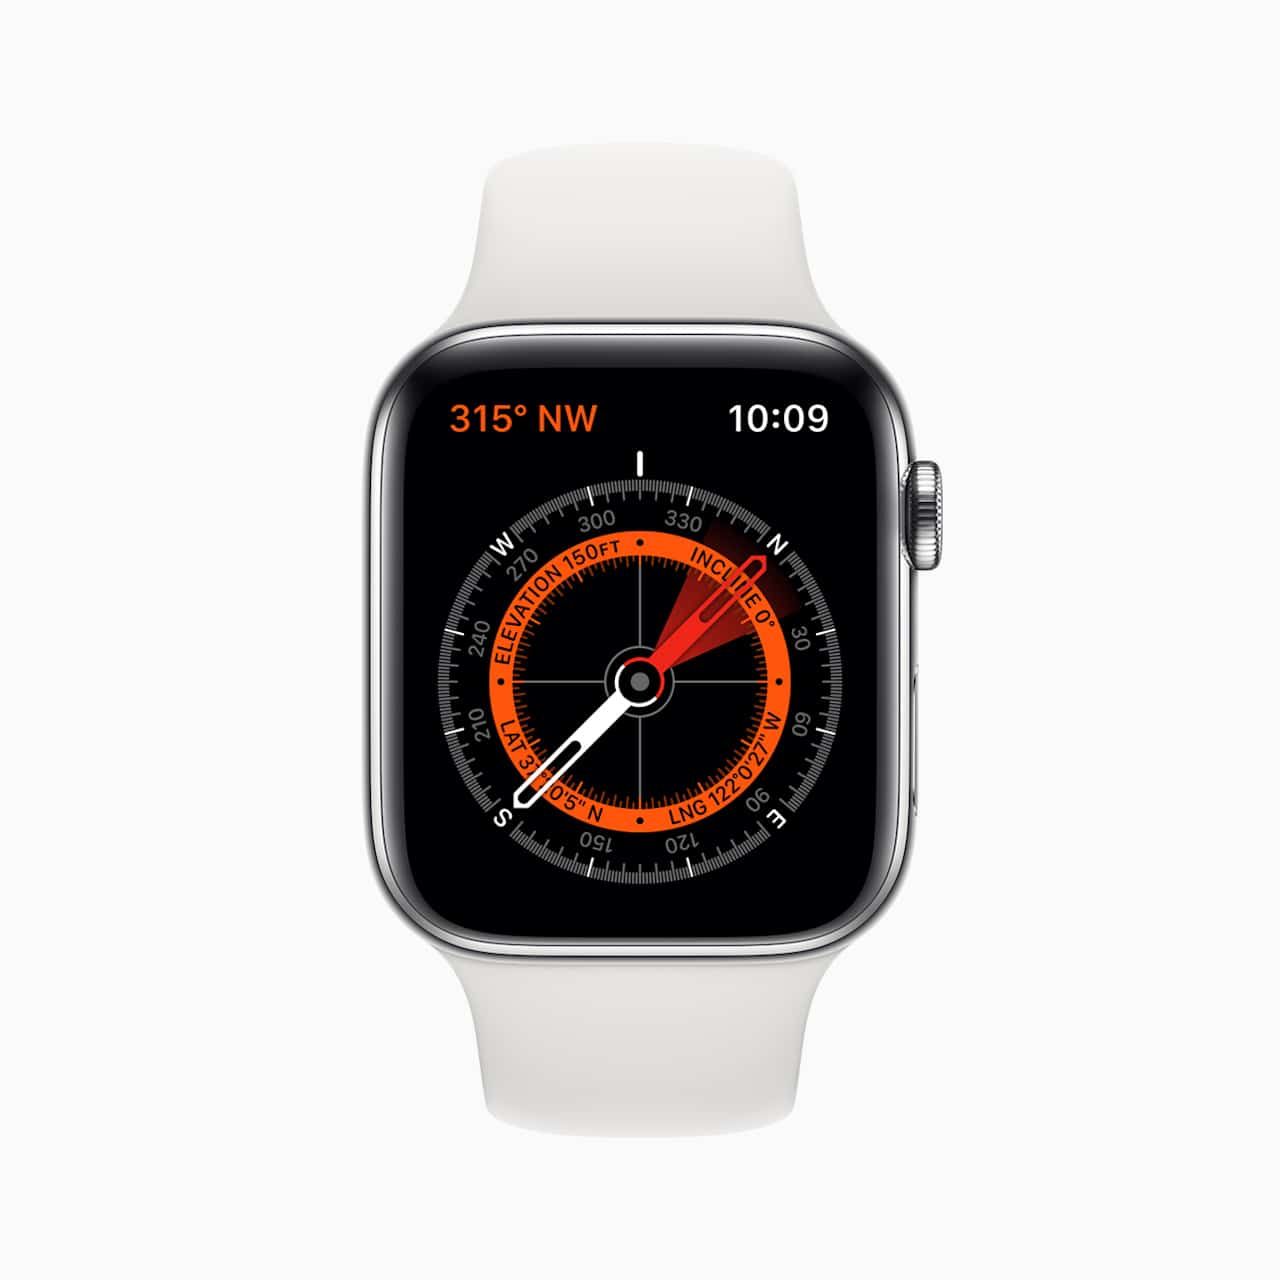 Apple Watch Series 5 Compass Screen